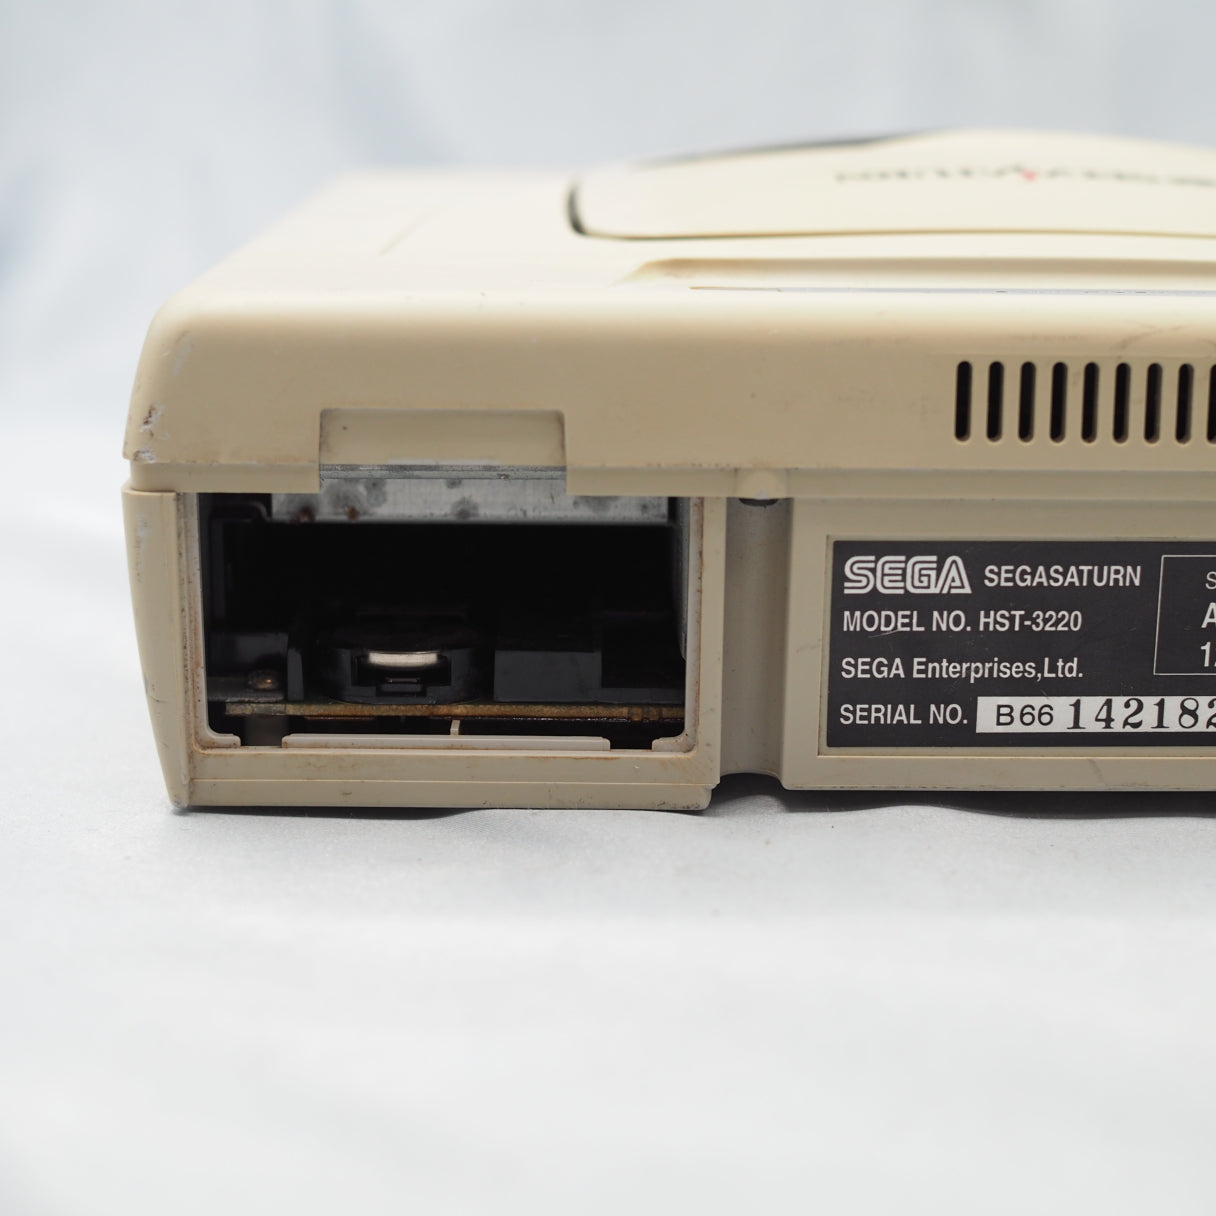 [JUNK] SEGA SATURN Console system HST-3220